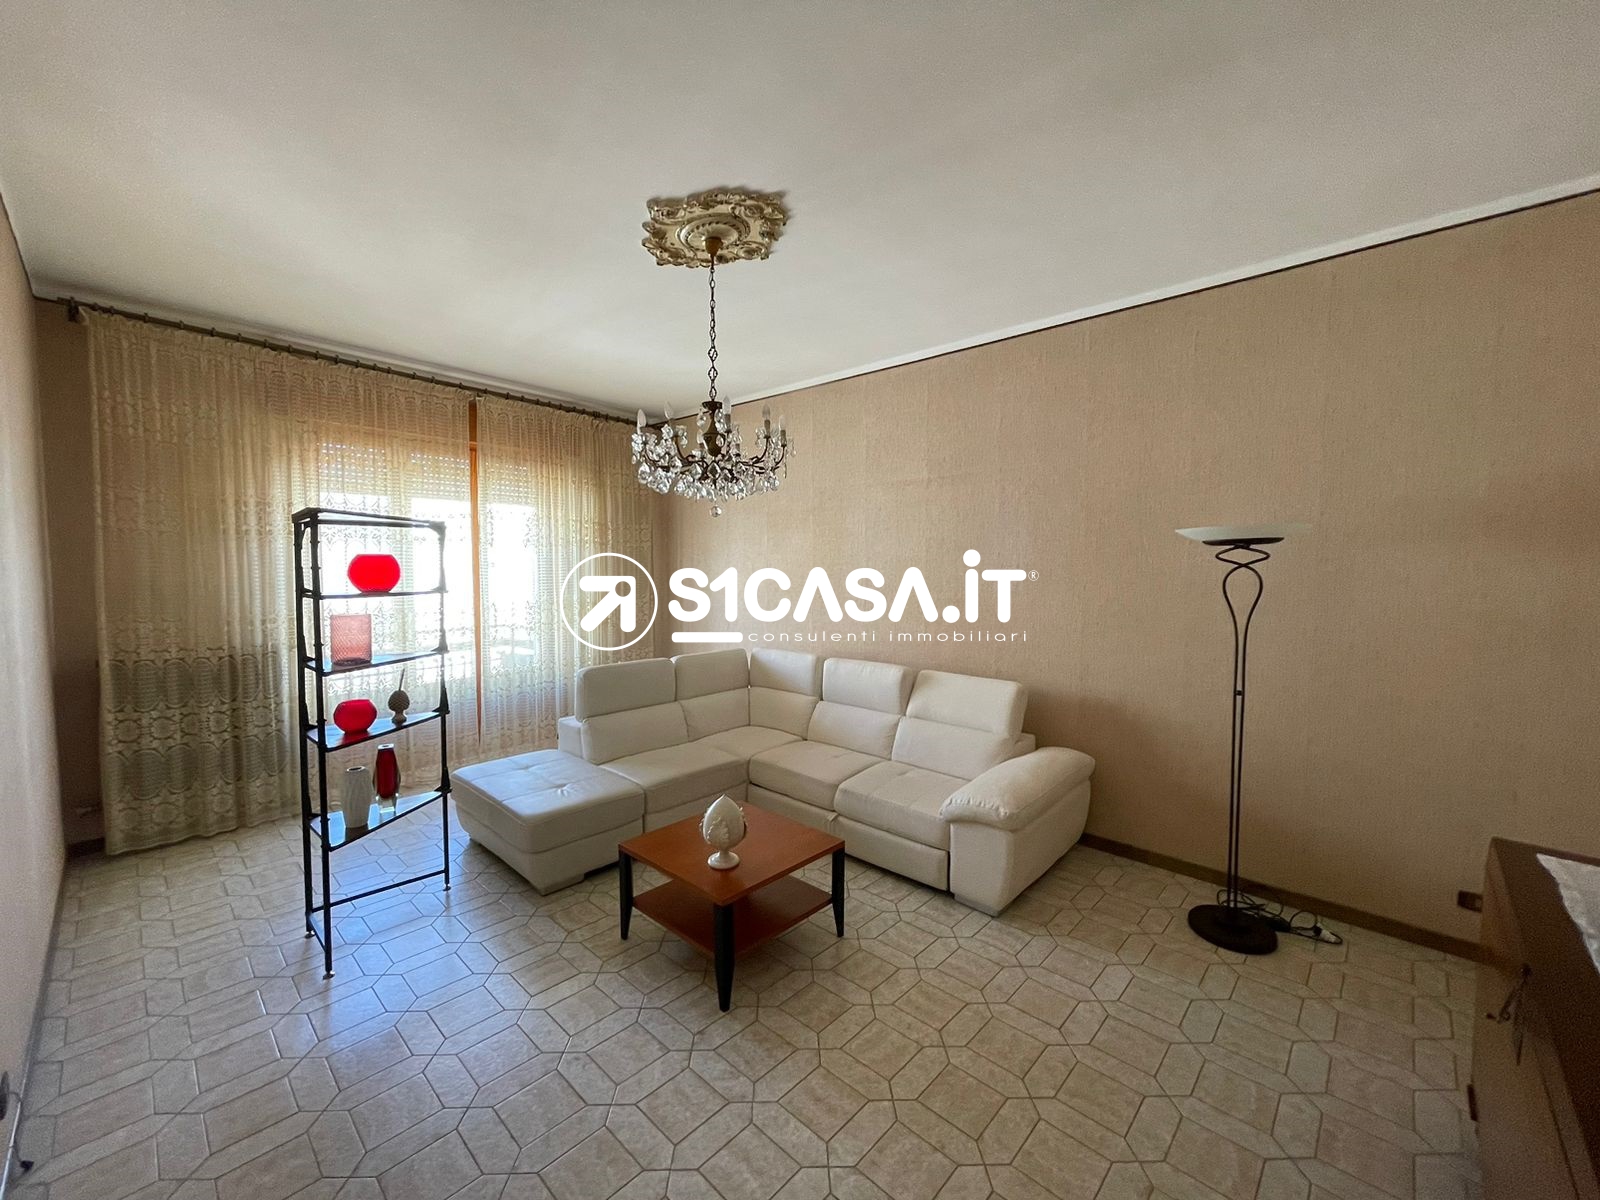 Appartamento in affitto a Galatina, 9 locali, prezzo € 450 | PortaleAgenzieImmobiliari.it